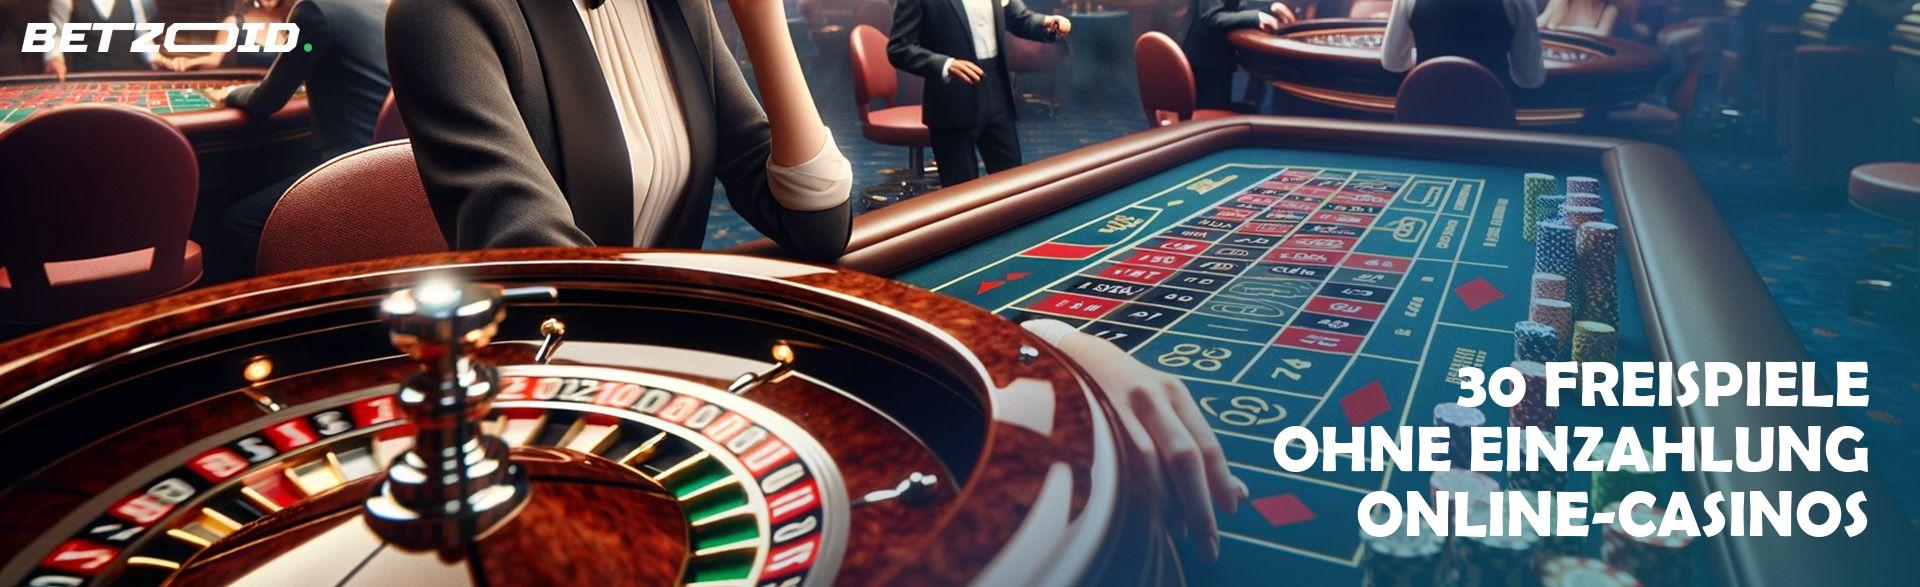 30 Freispiele ohne Einzahlung Online-Casinos.